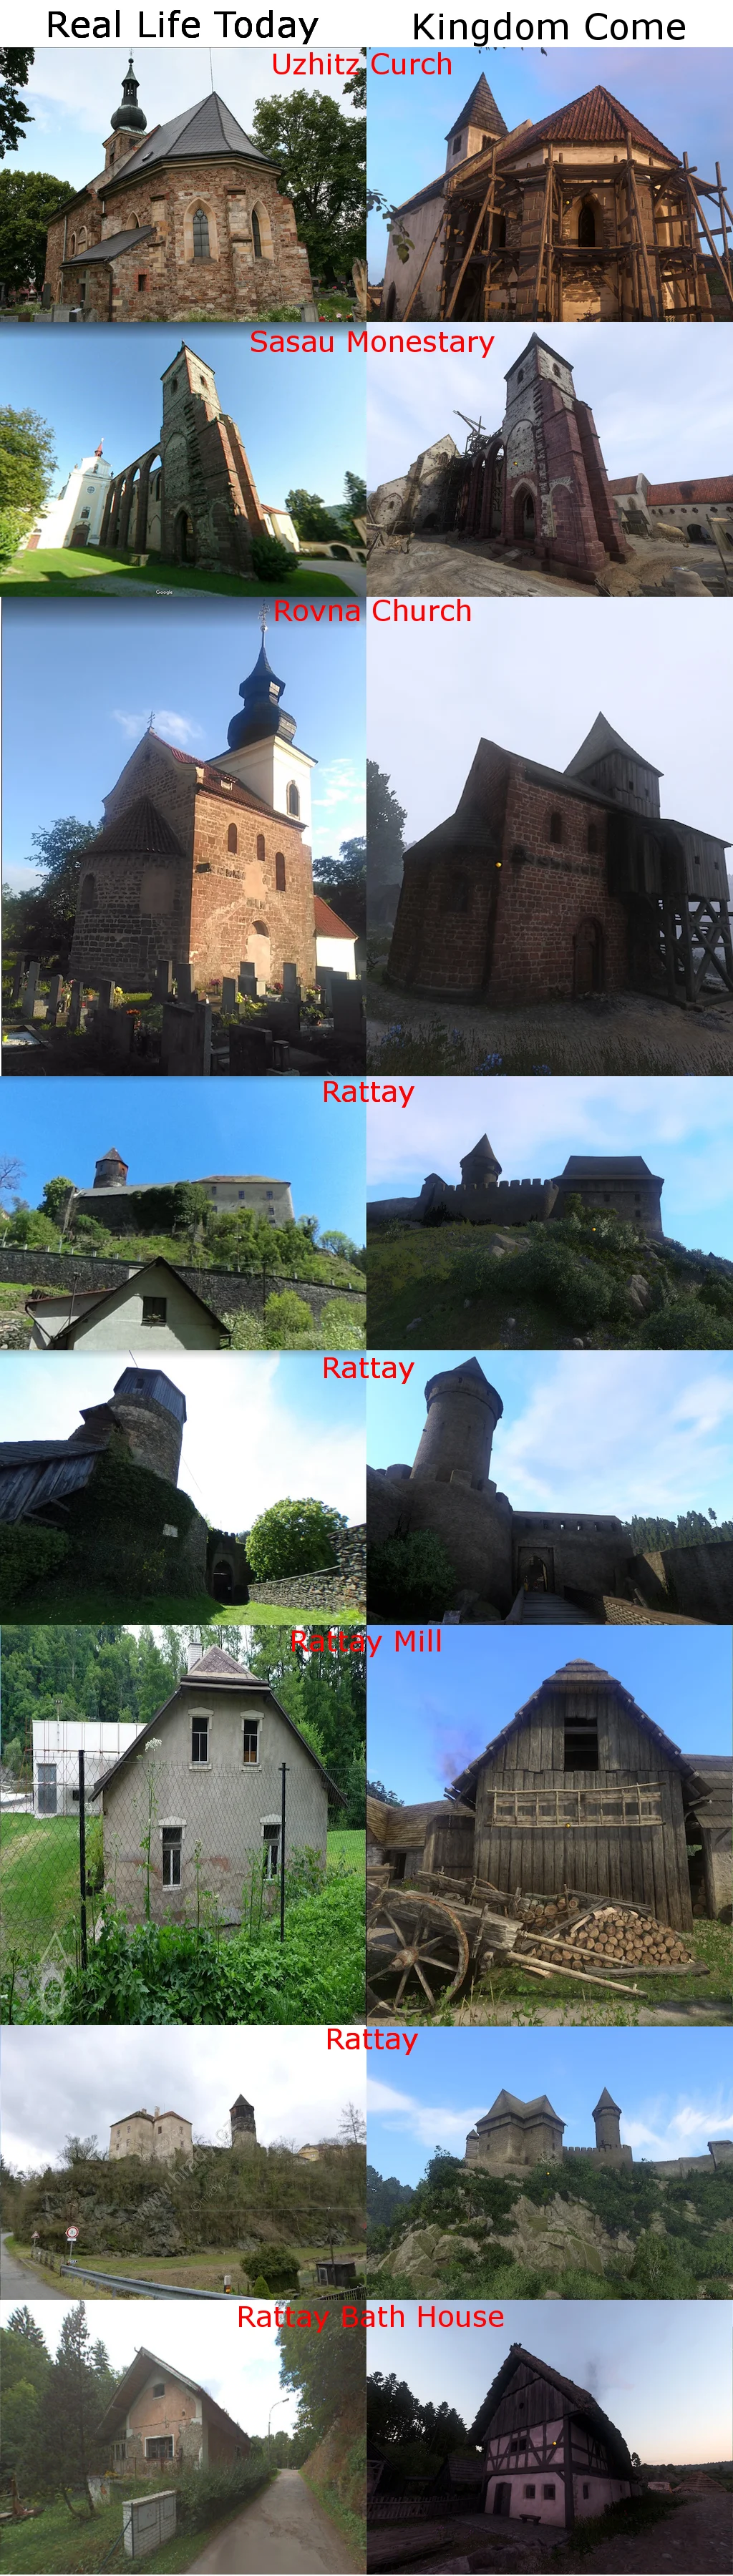 Фото: сравнение локаций Kingdom Come с реальными местами, которые сохранились со Средних веков - фото 2